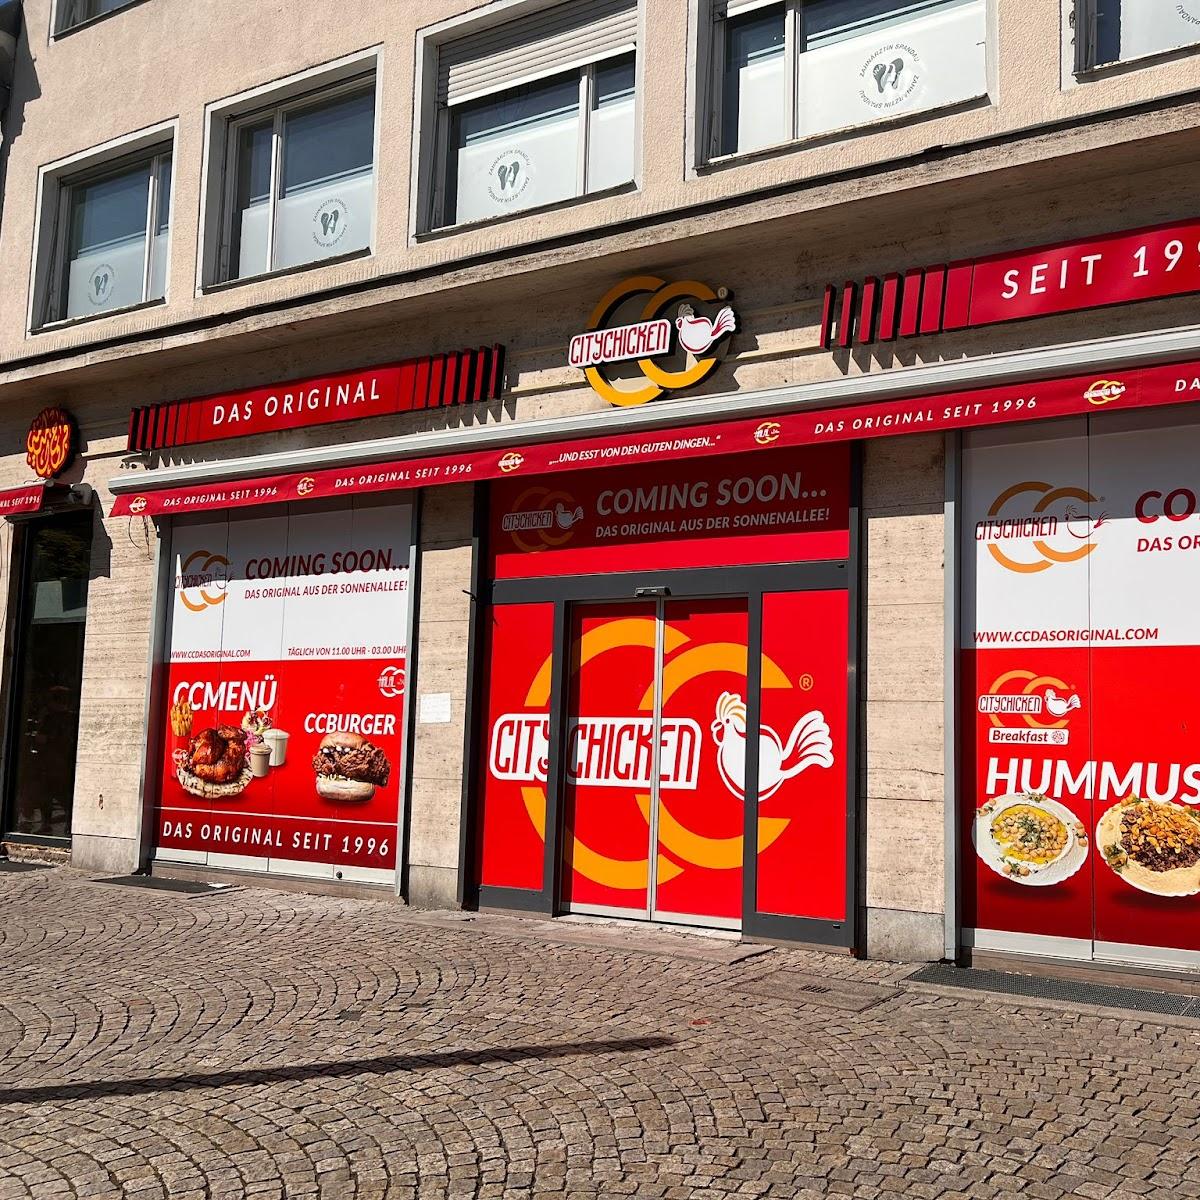 Restaurant "City Chicken das Original seit 1996" in Berlin